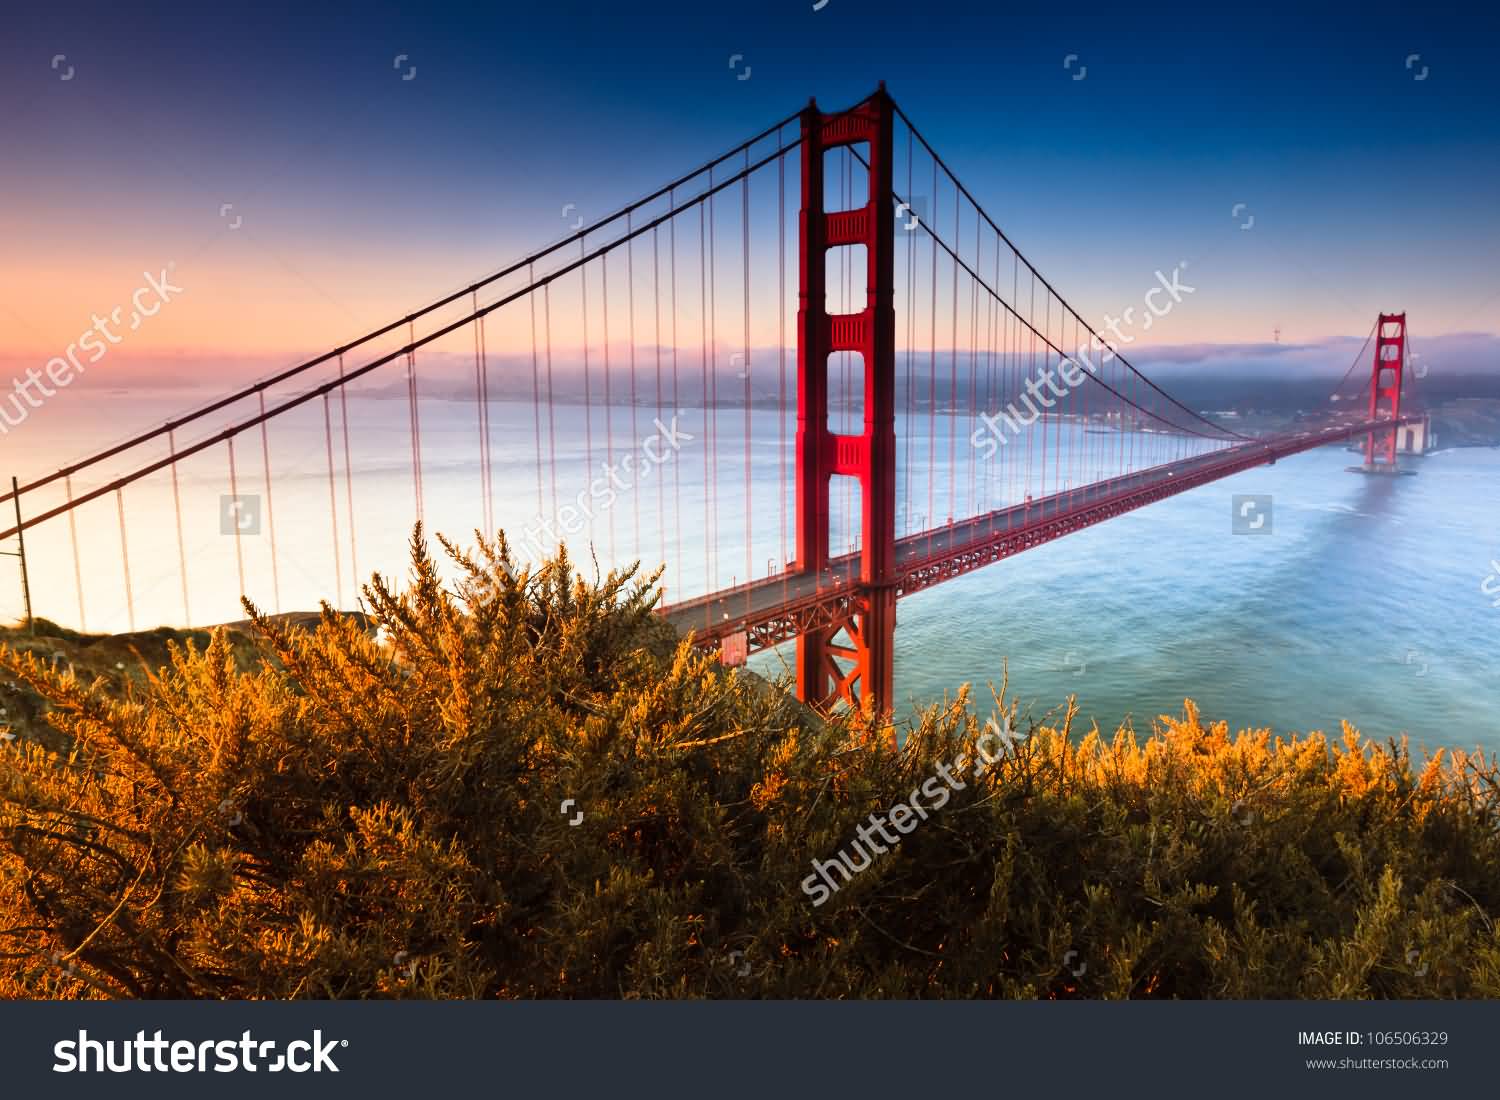 Golden Gate Bridge Of San Francisco